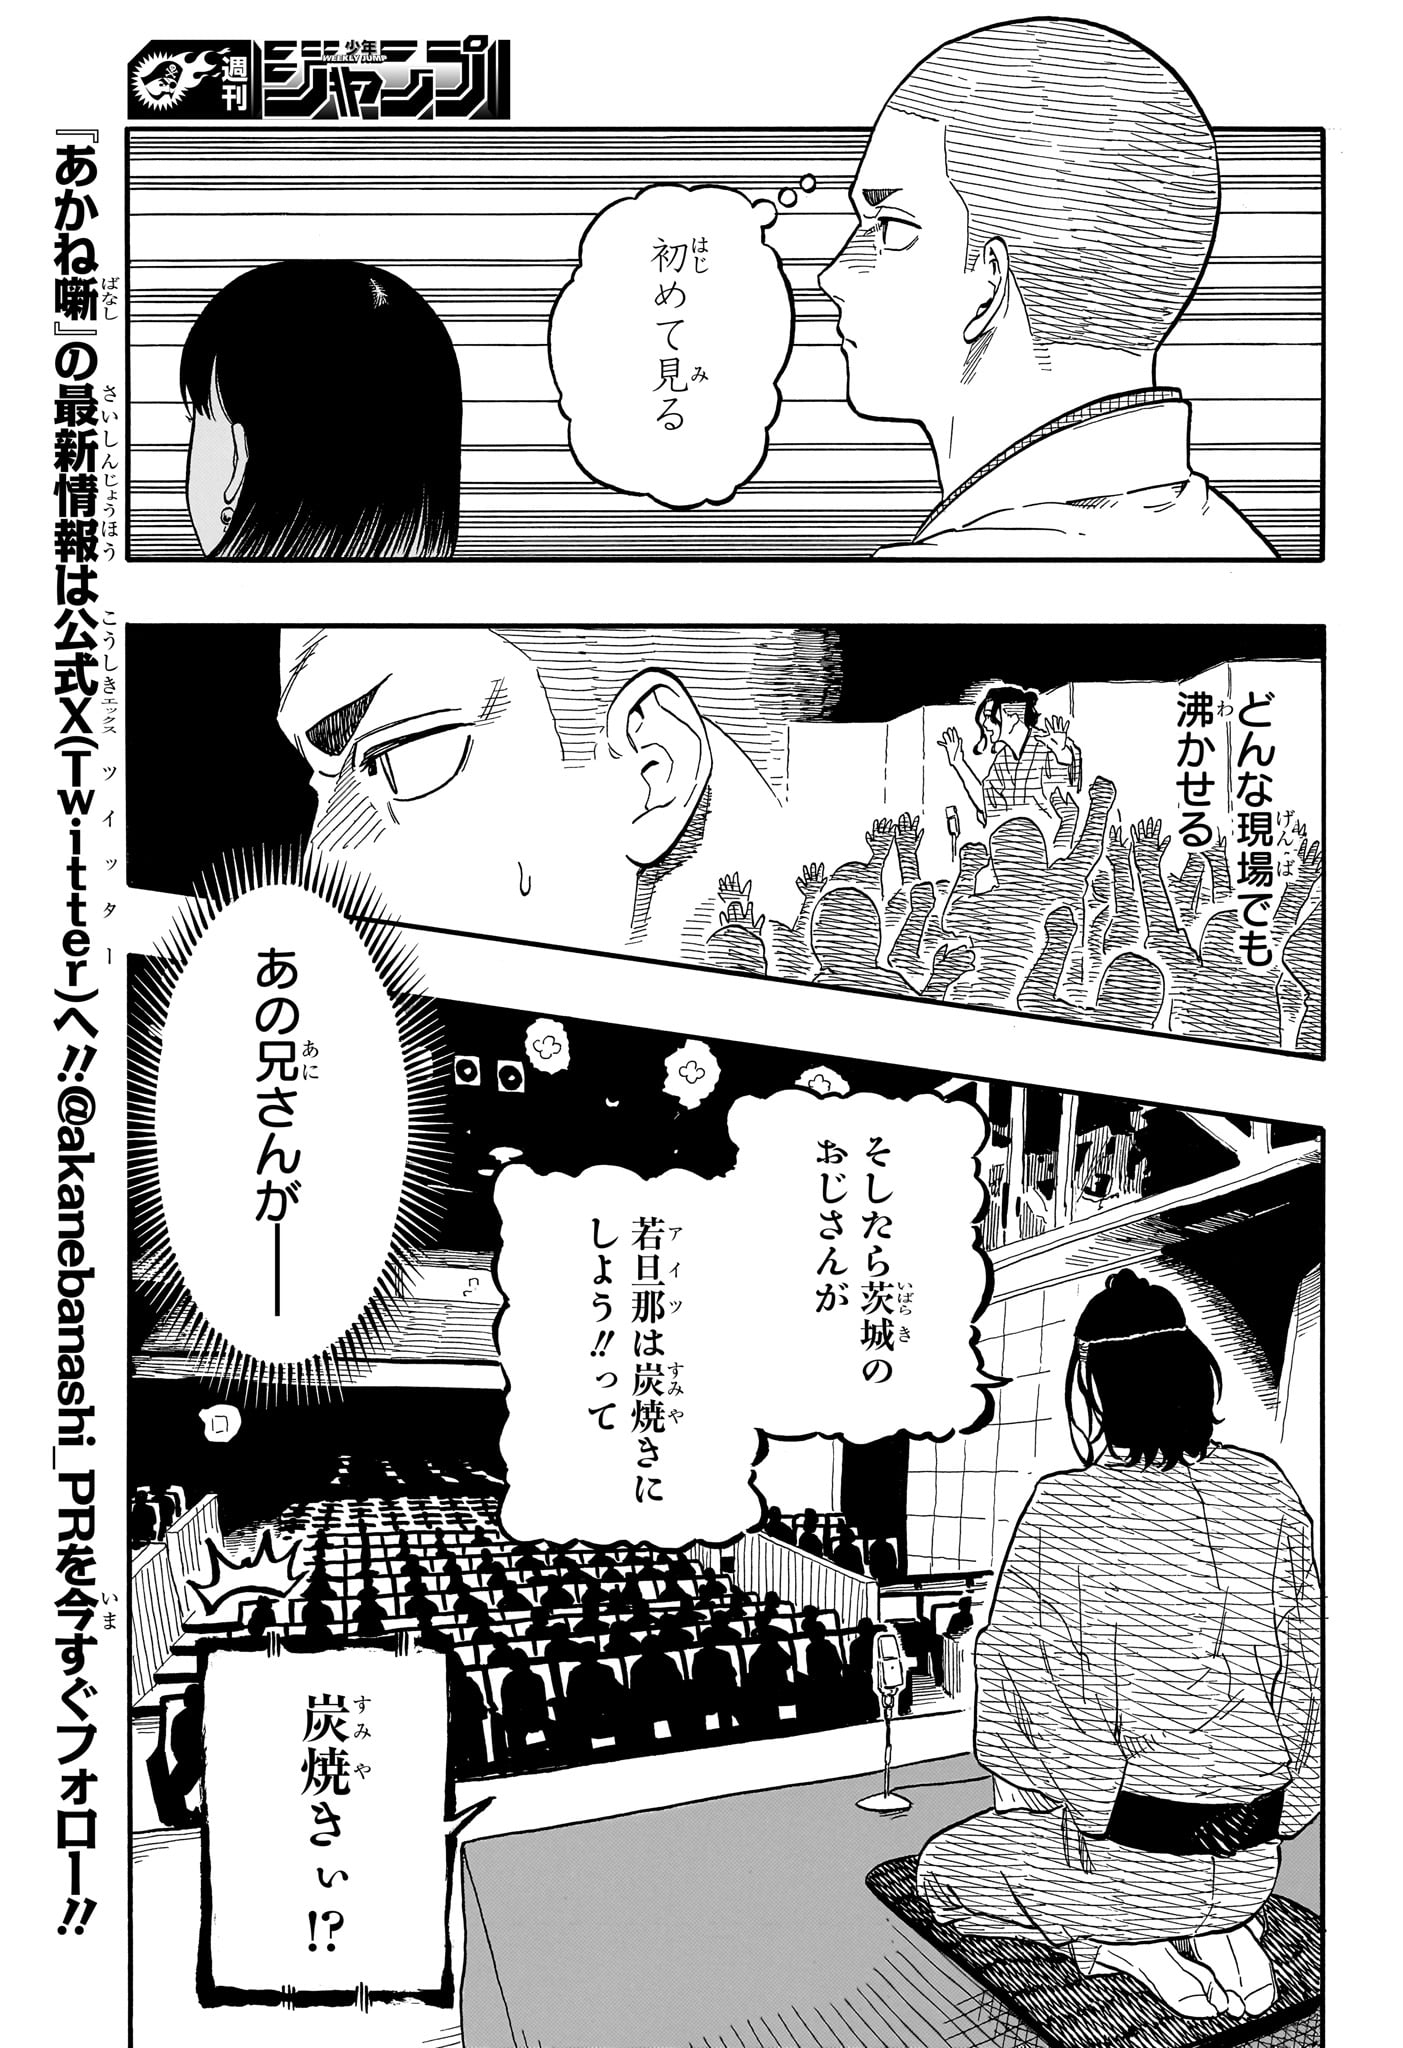 Akane-Banashi - Chapter 112 - Page 9